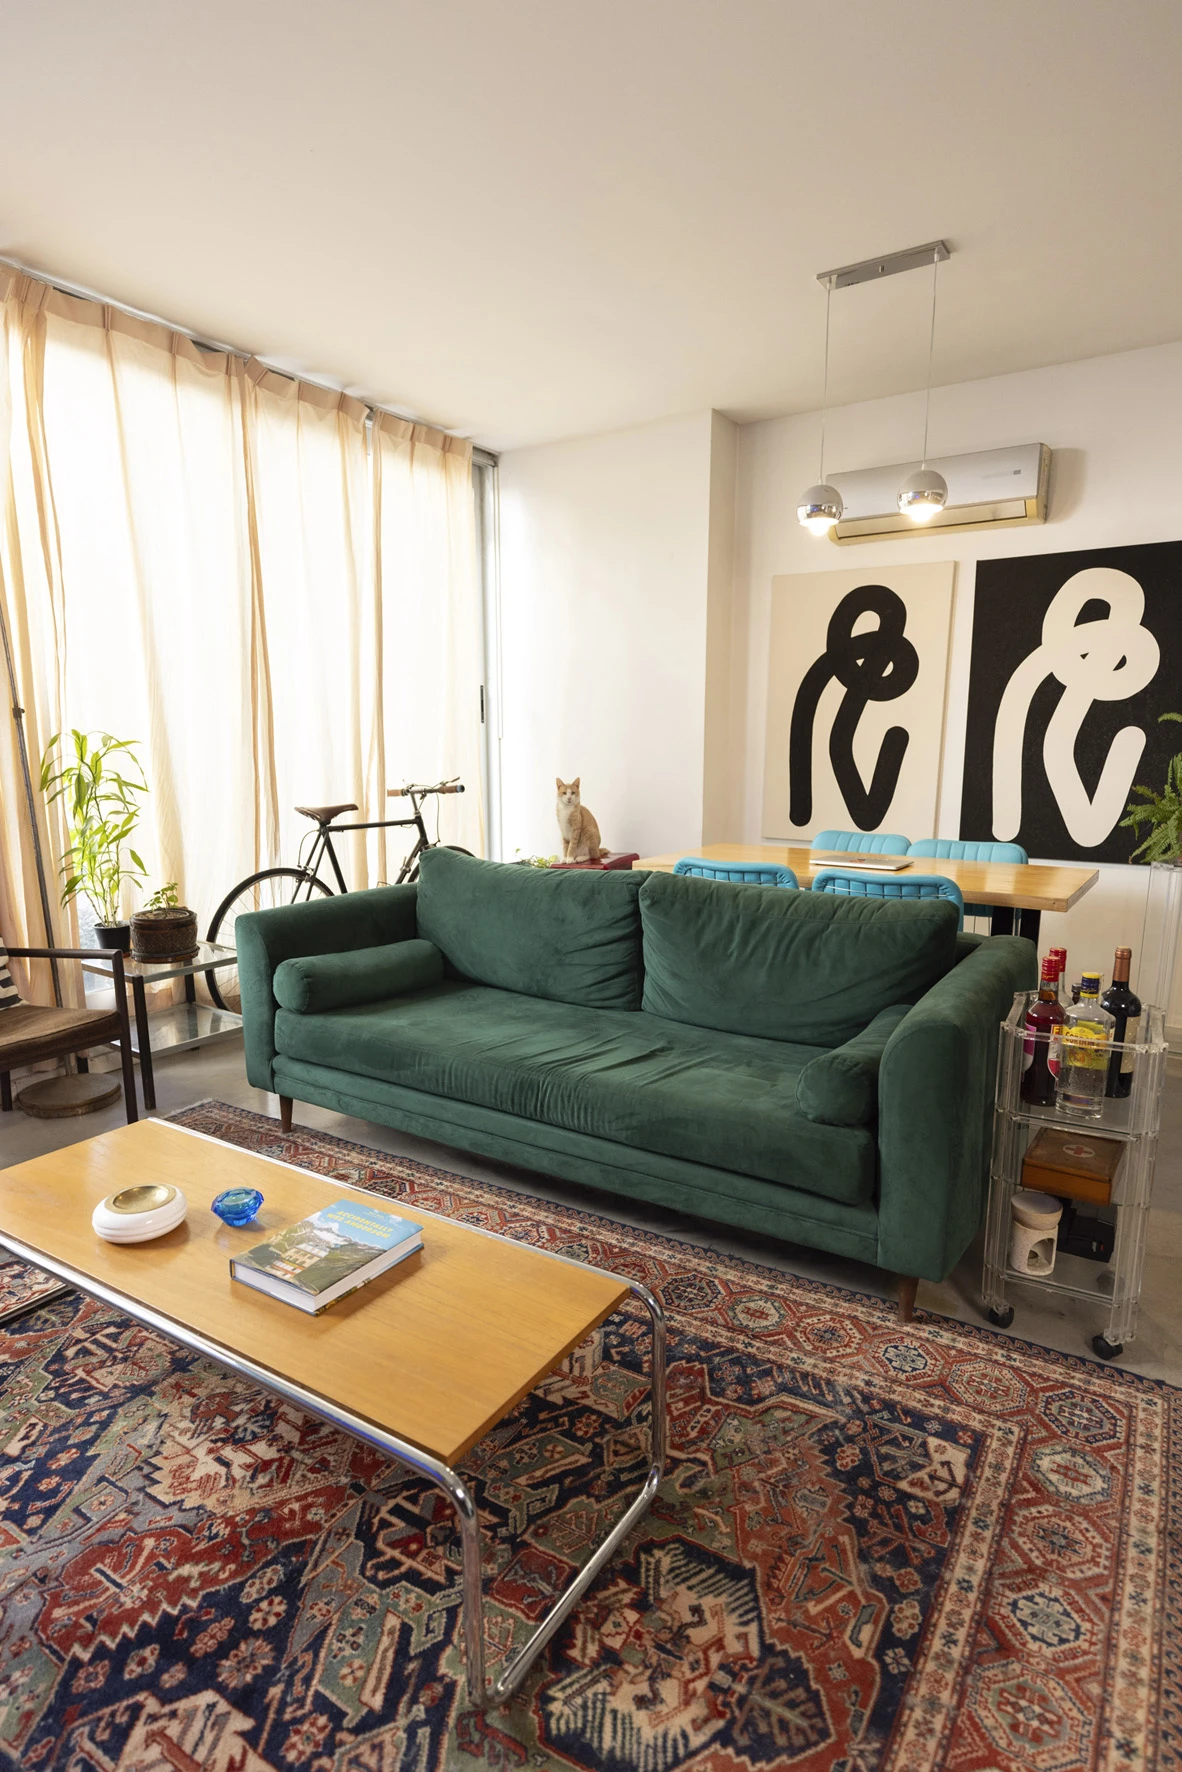 Dos espacios delimitados y sectorizados -espontánea y perfectamente- por el sofá. 